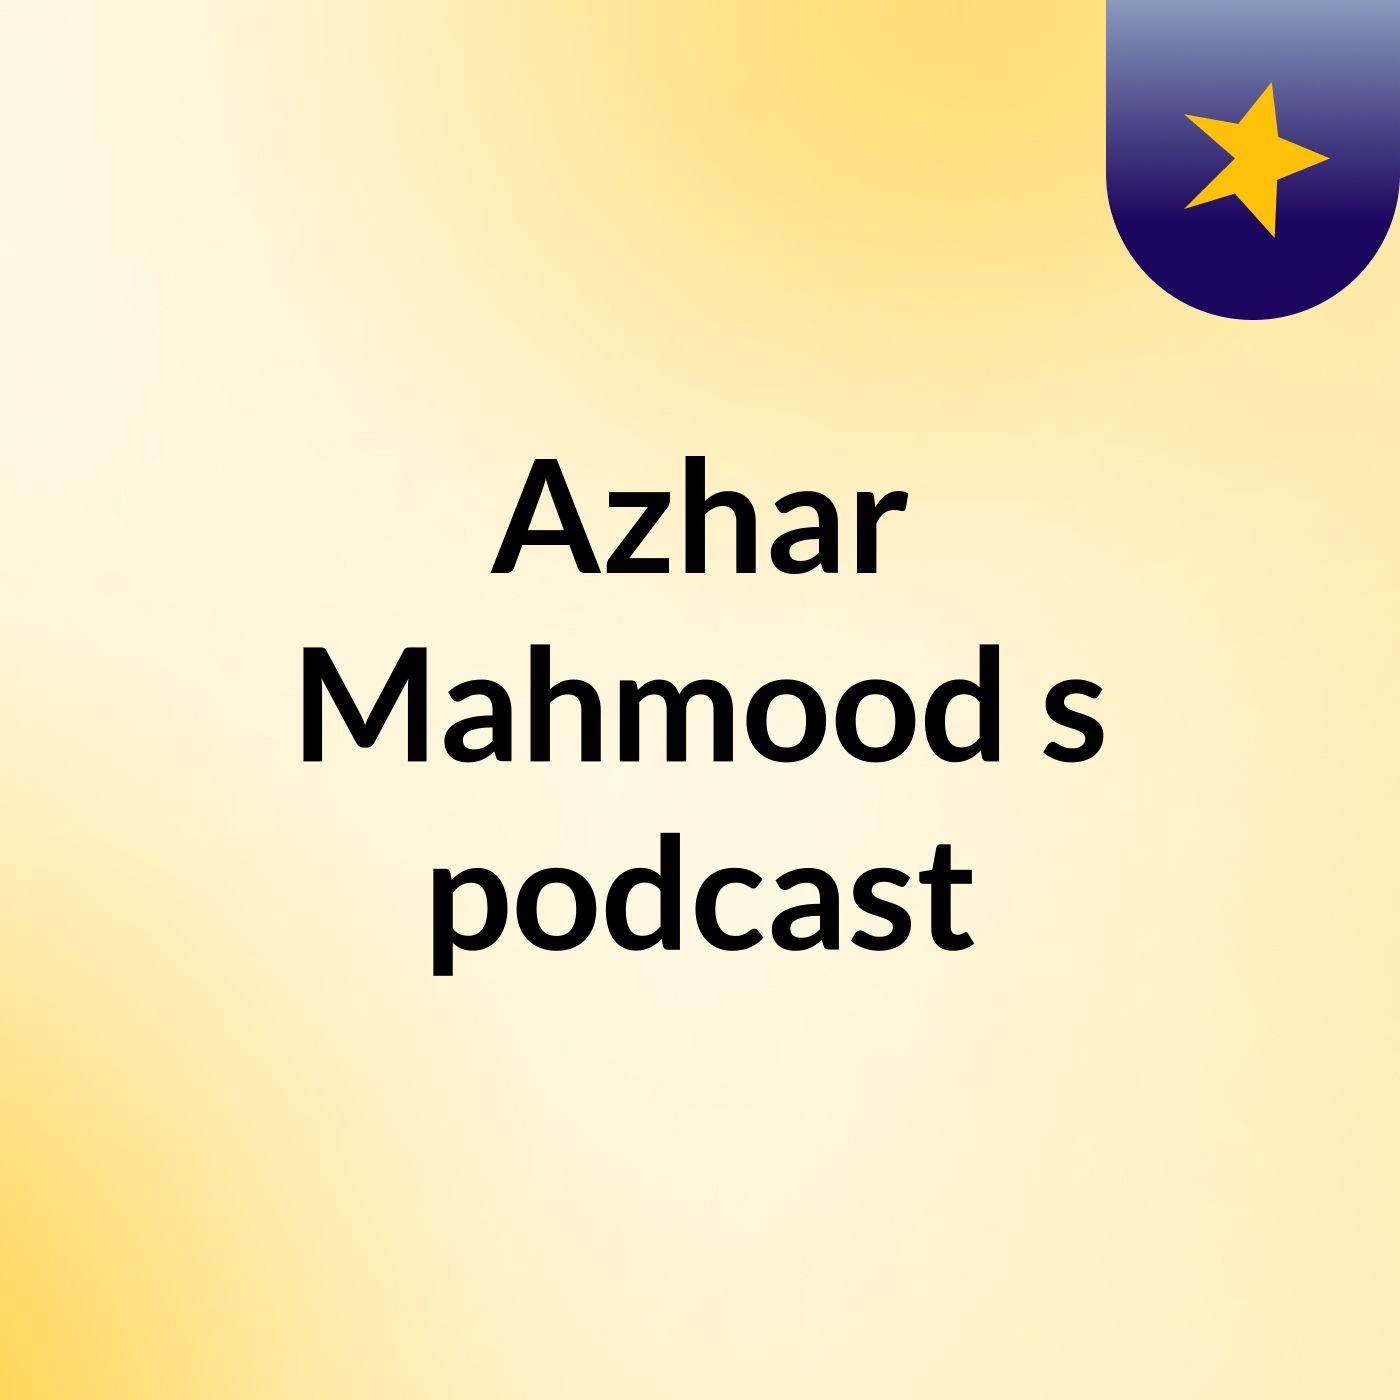 Azhar Mahmood's podcast